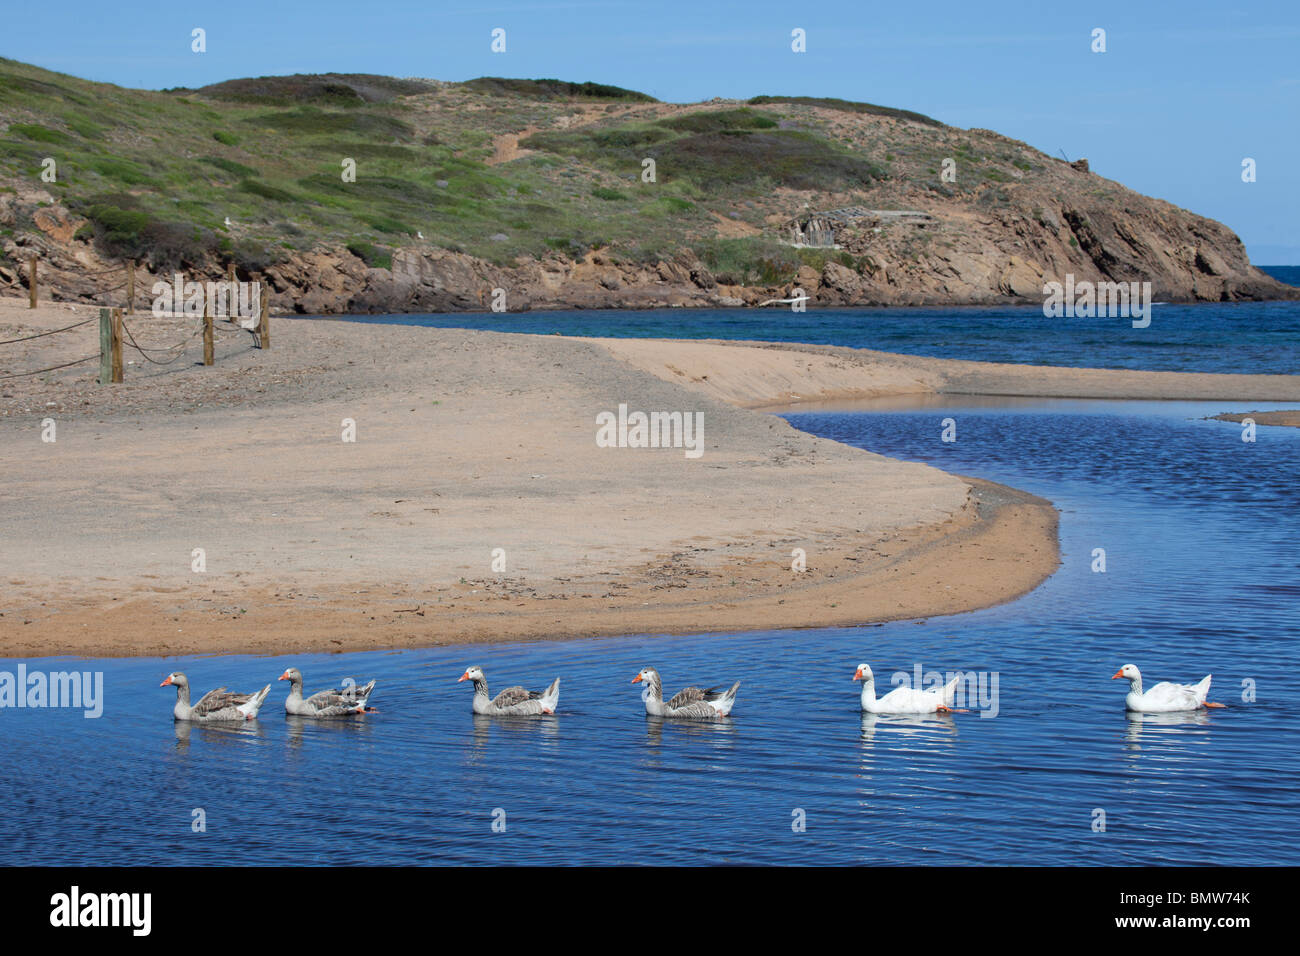 Graugänse am Wasser mit Strand Hintergrund Stockfoto